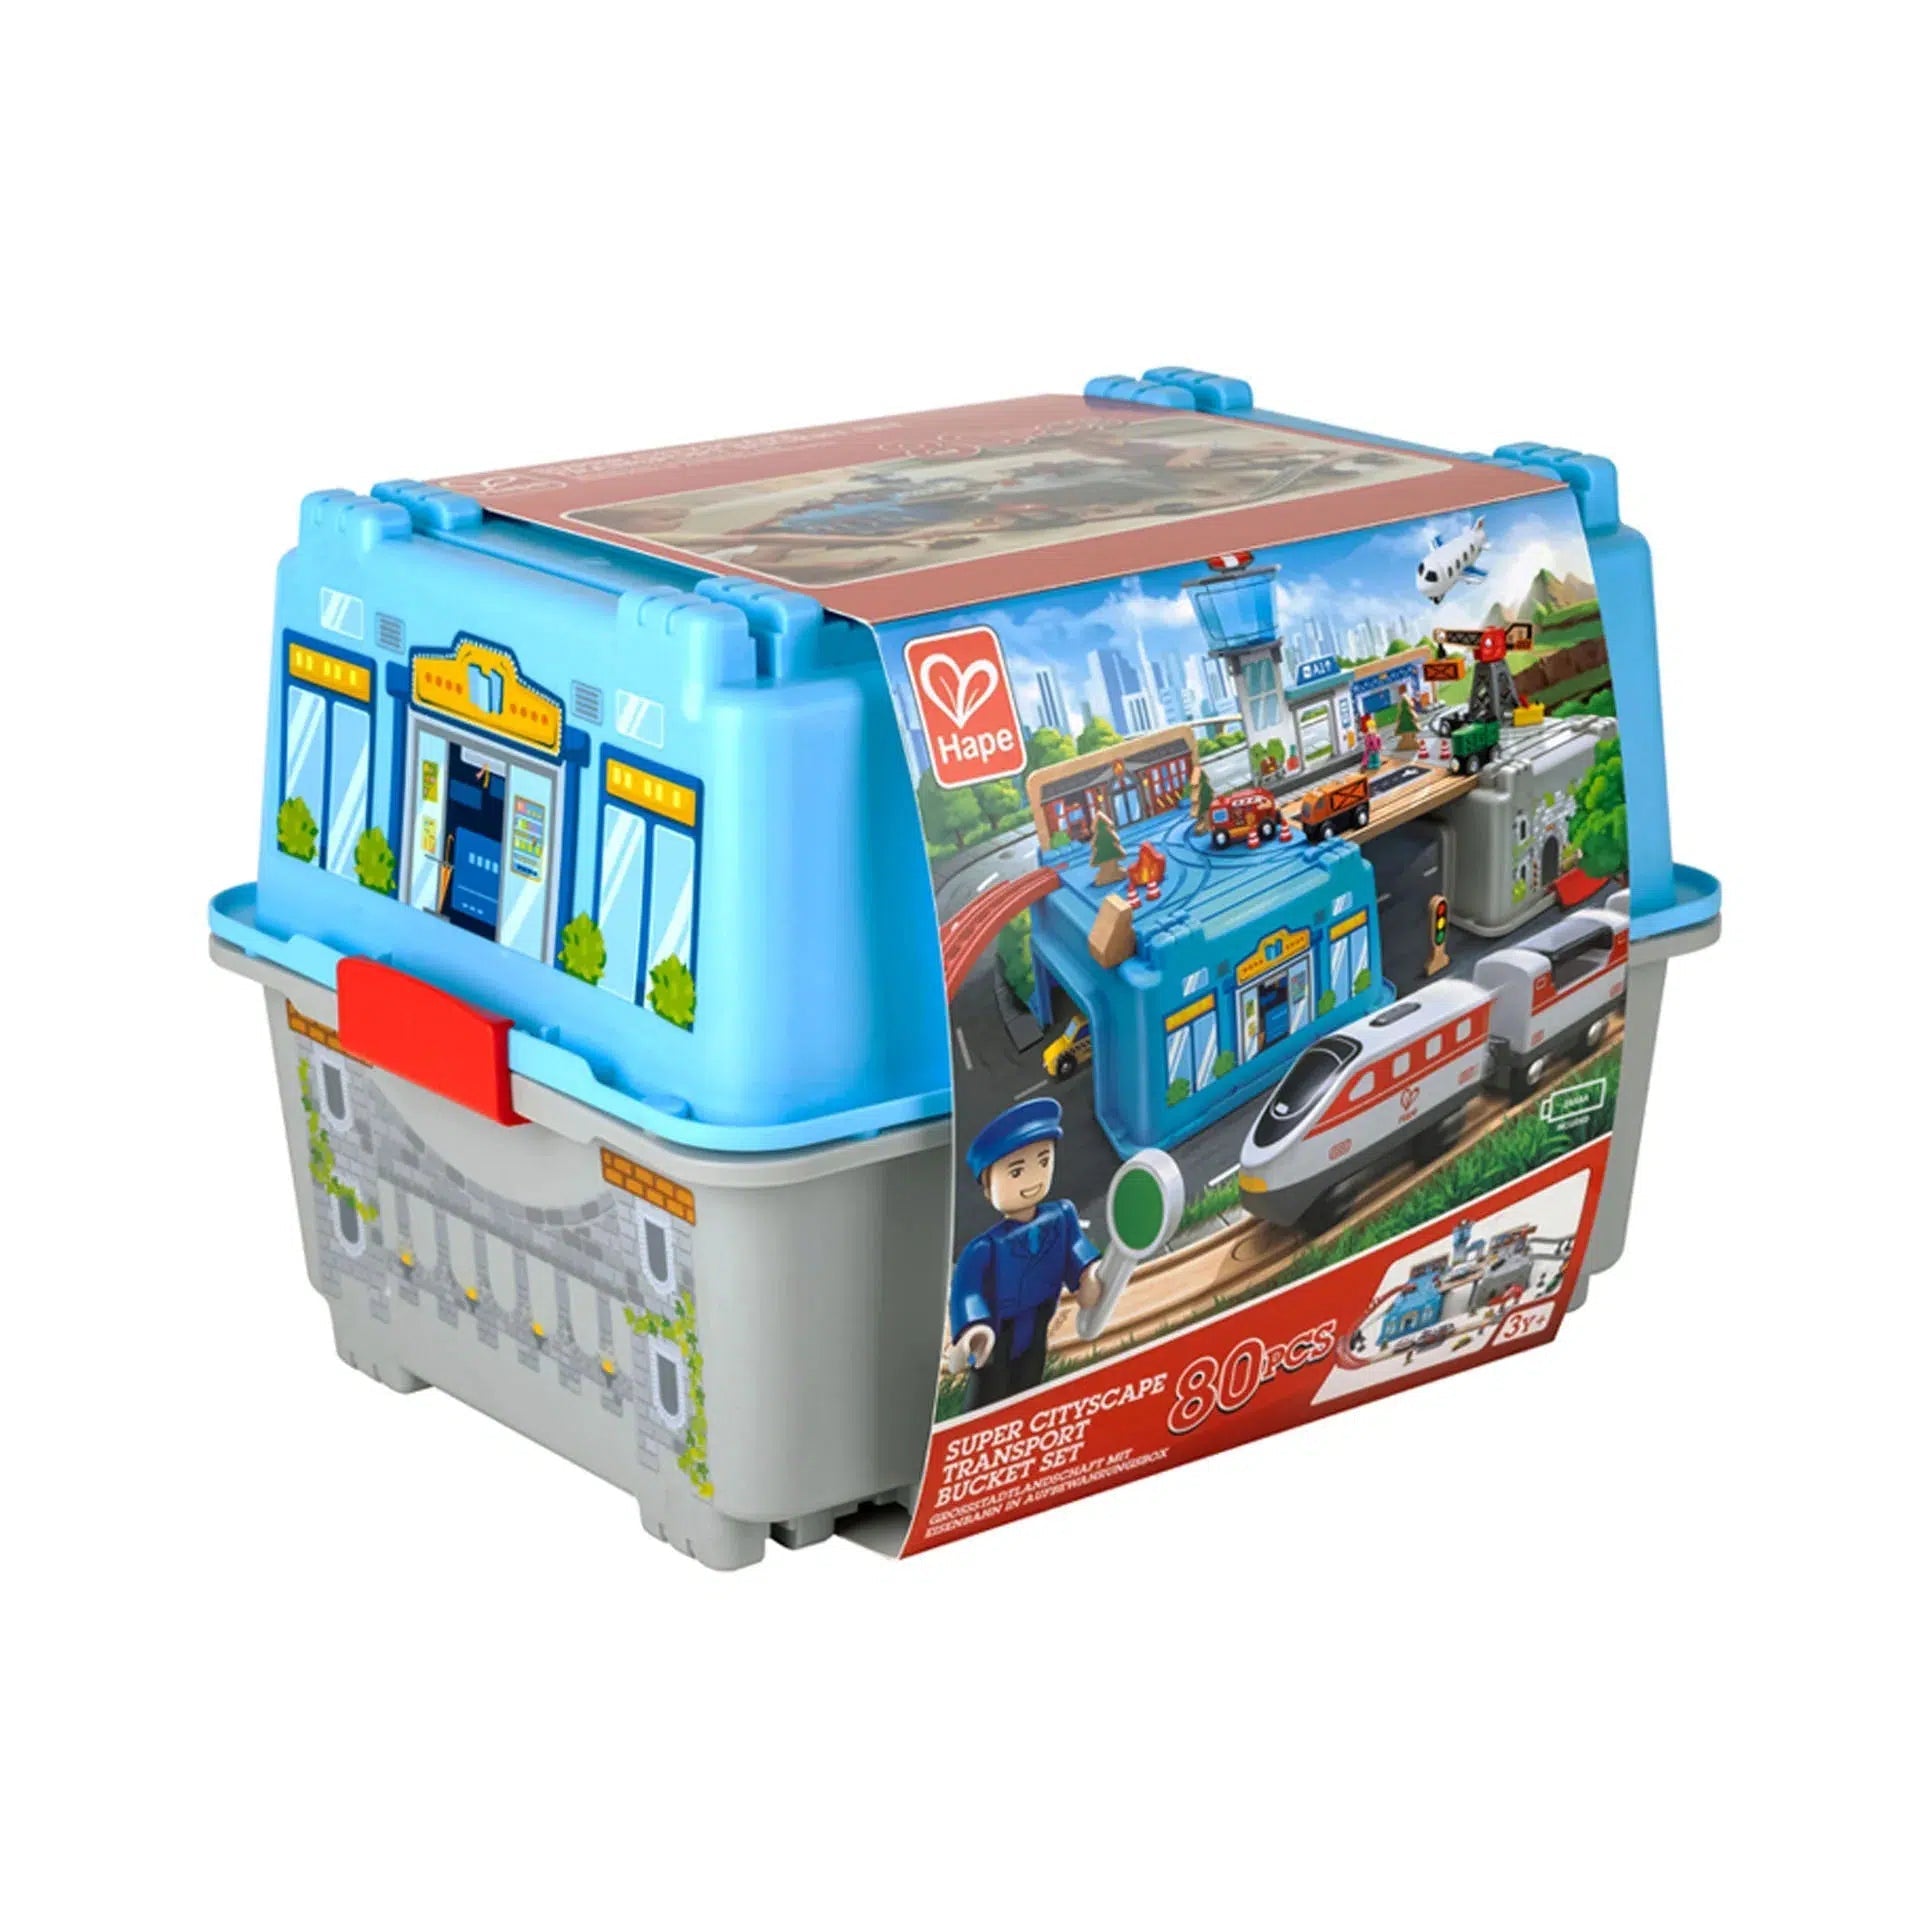 Hape-Hape Super Cityscape Transport Bucket Set-E3773-Legacy Toys